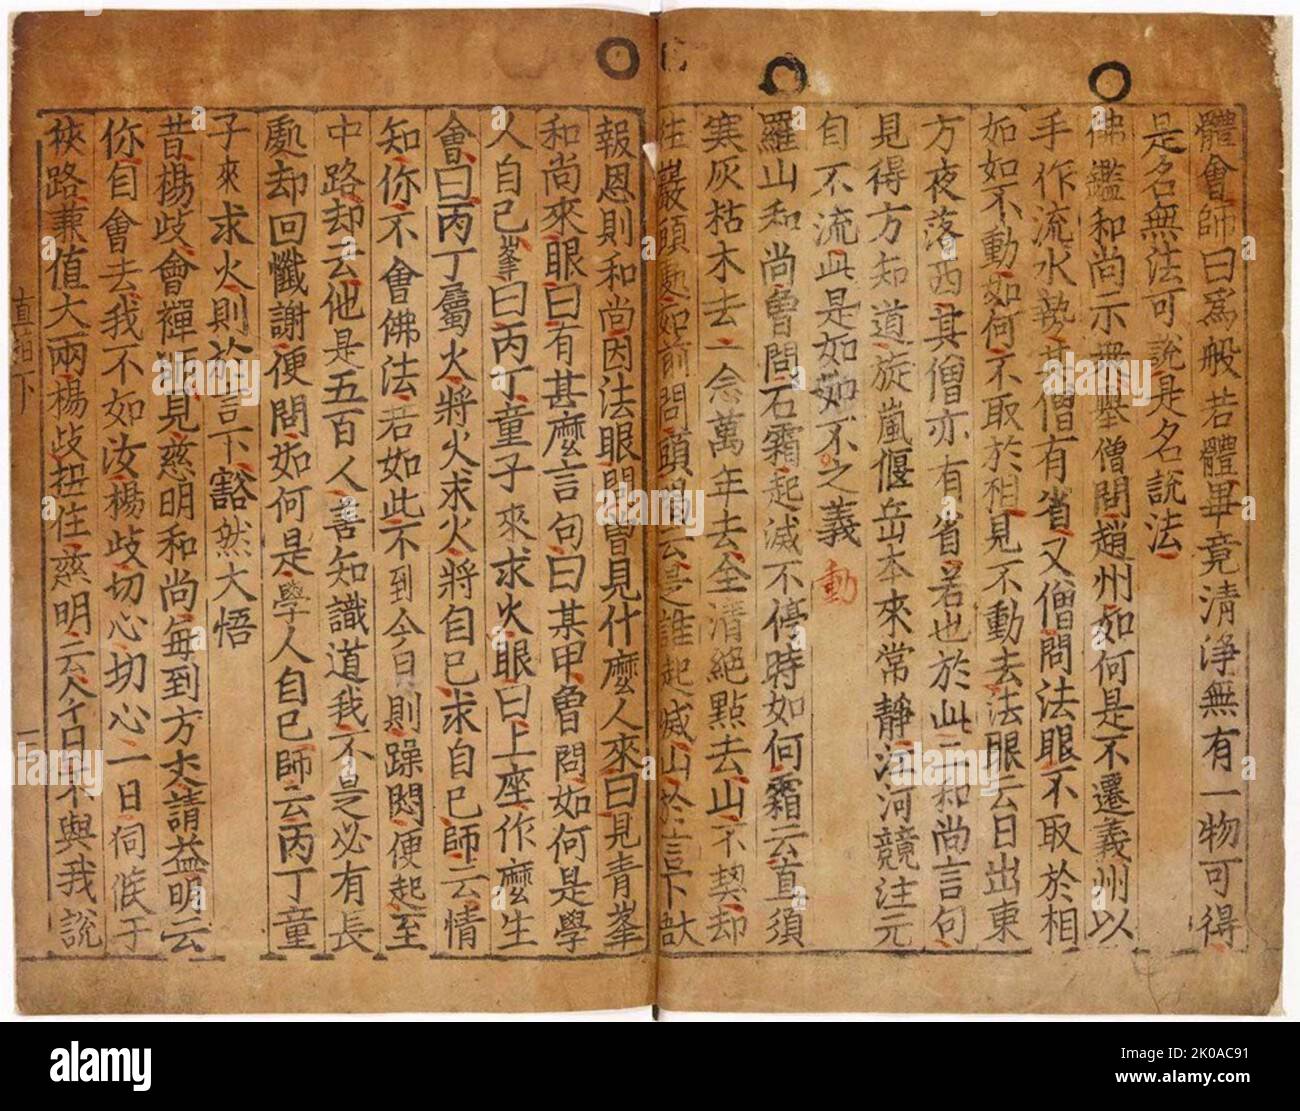 Jikji, enseignements sélectionnés des Sages bouddhistes et des maîtres séon, le plus ancien livre connu imprimé avec le type de métal mobile. Imprimé en Corée, 1377 Banque D'Images